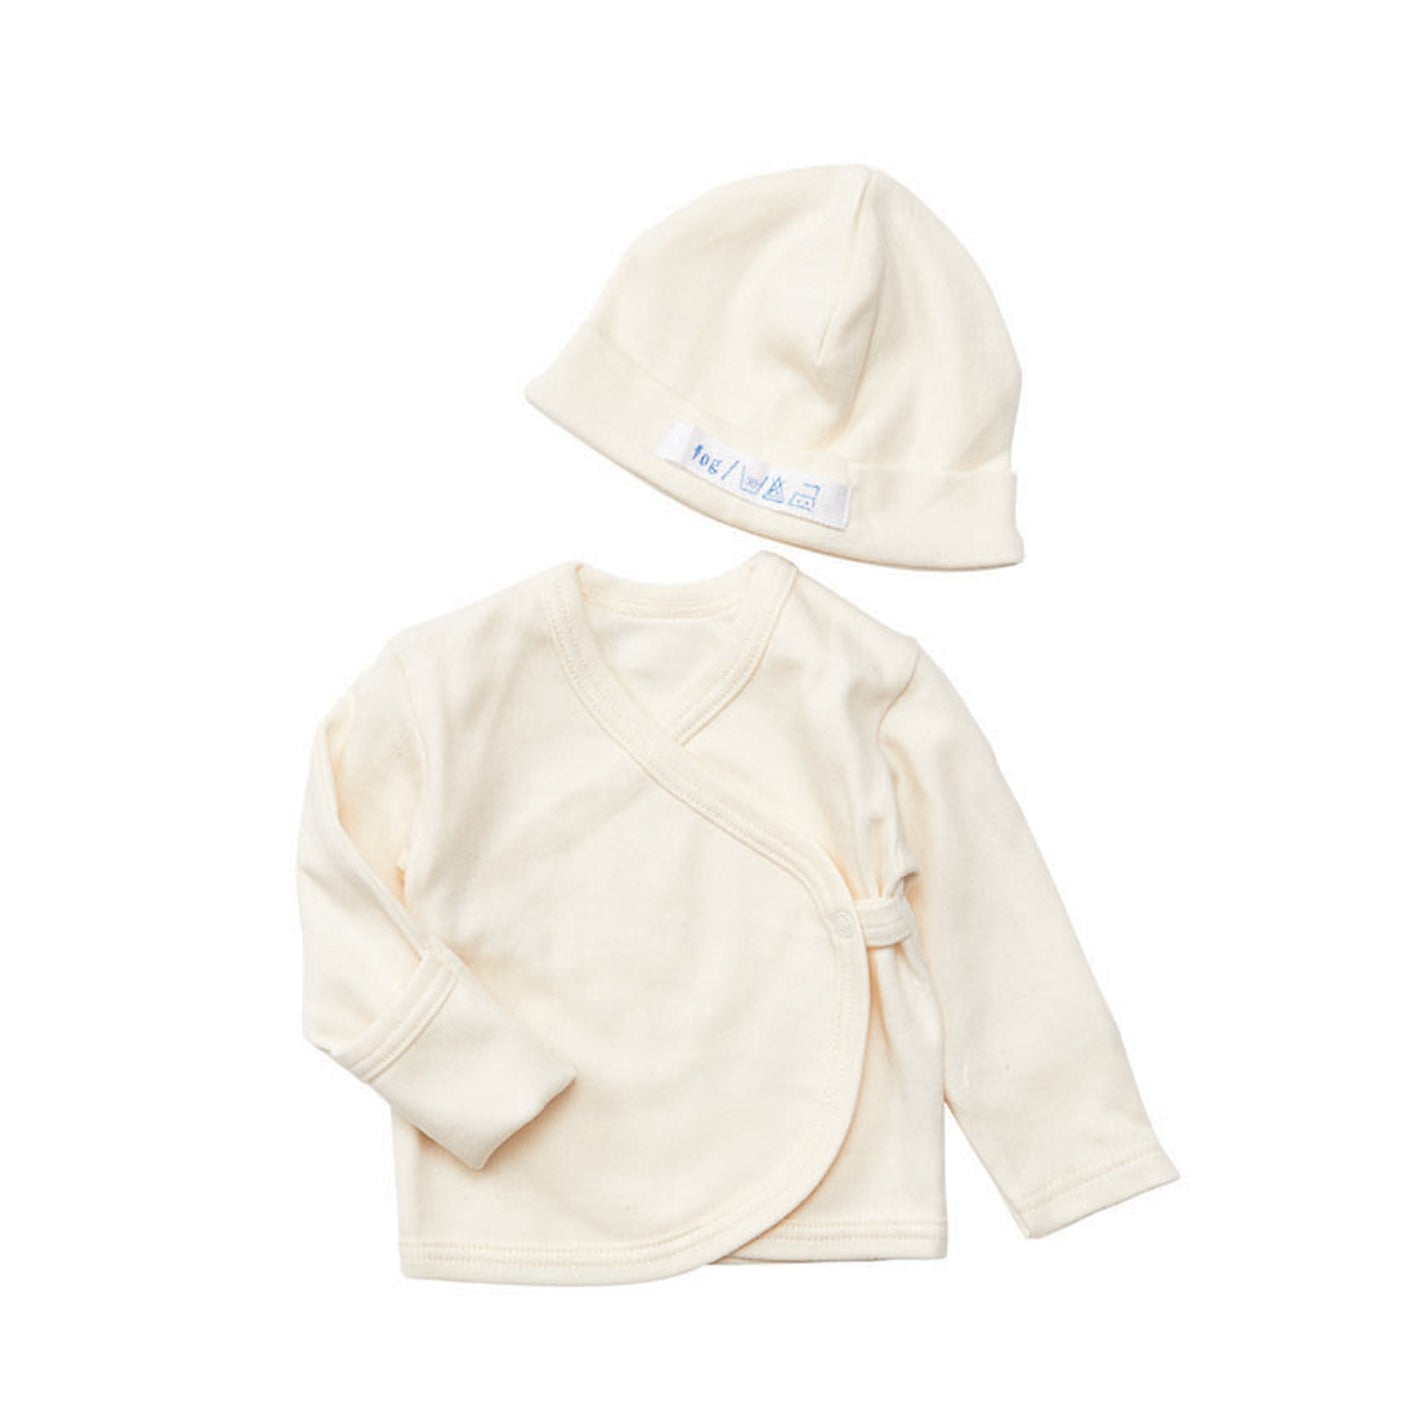 Fog Linen Work Baby Cardigan + Cap